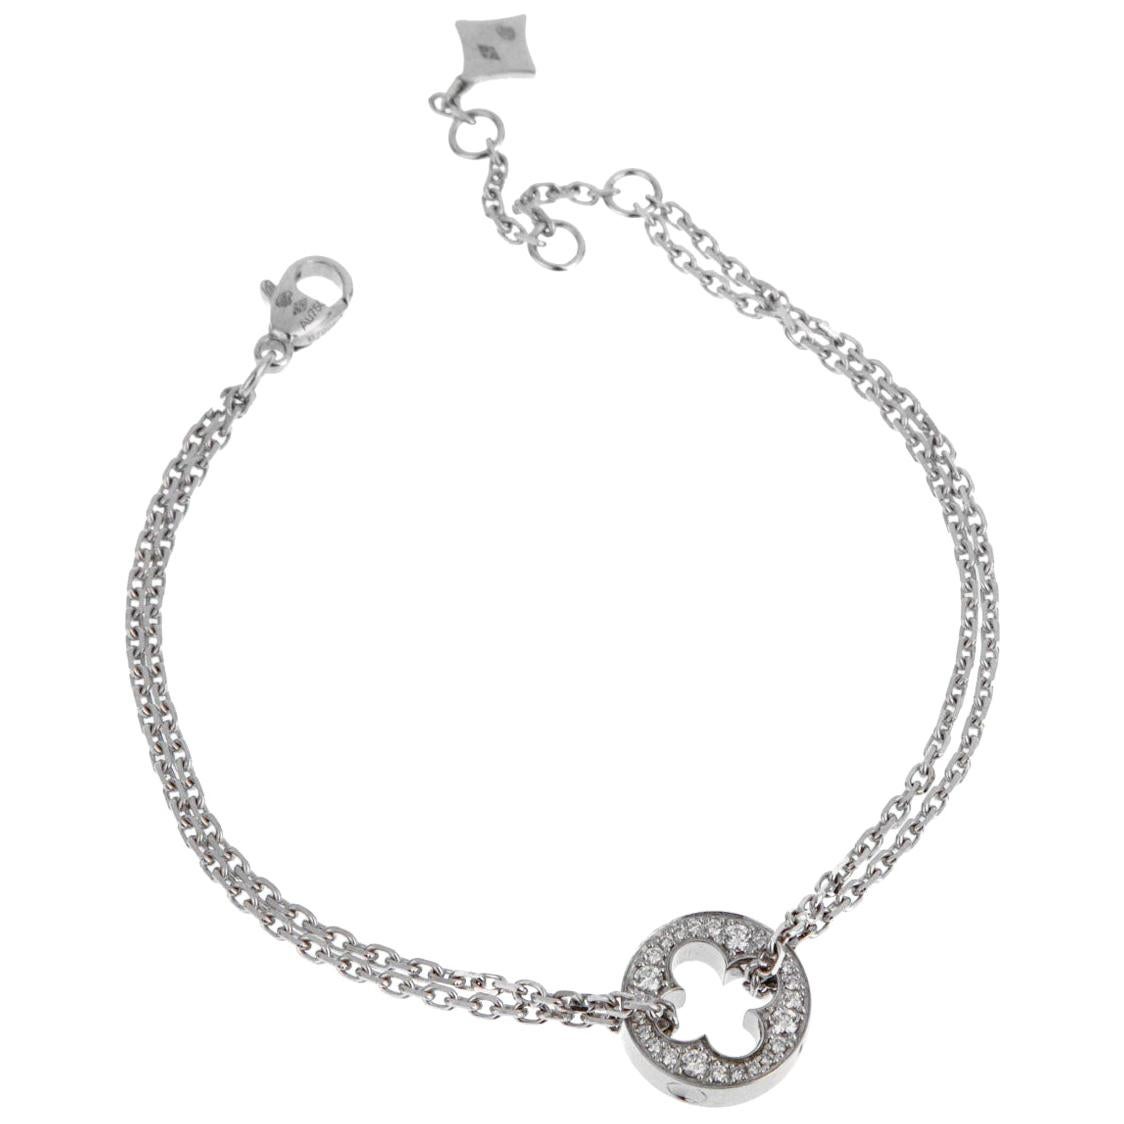 Authentic LOUIS VUITTON Brassle Liens Empreinte Bracelet #260-006-044-7555